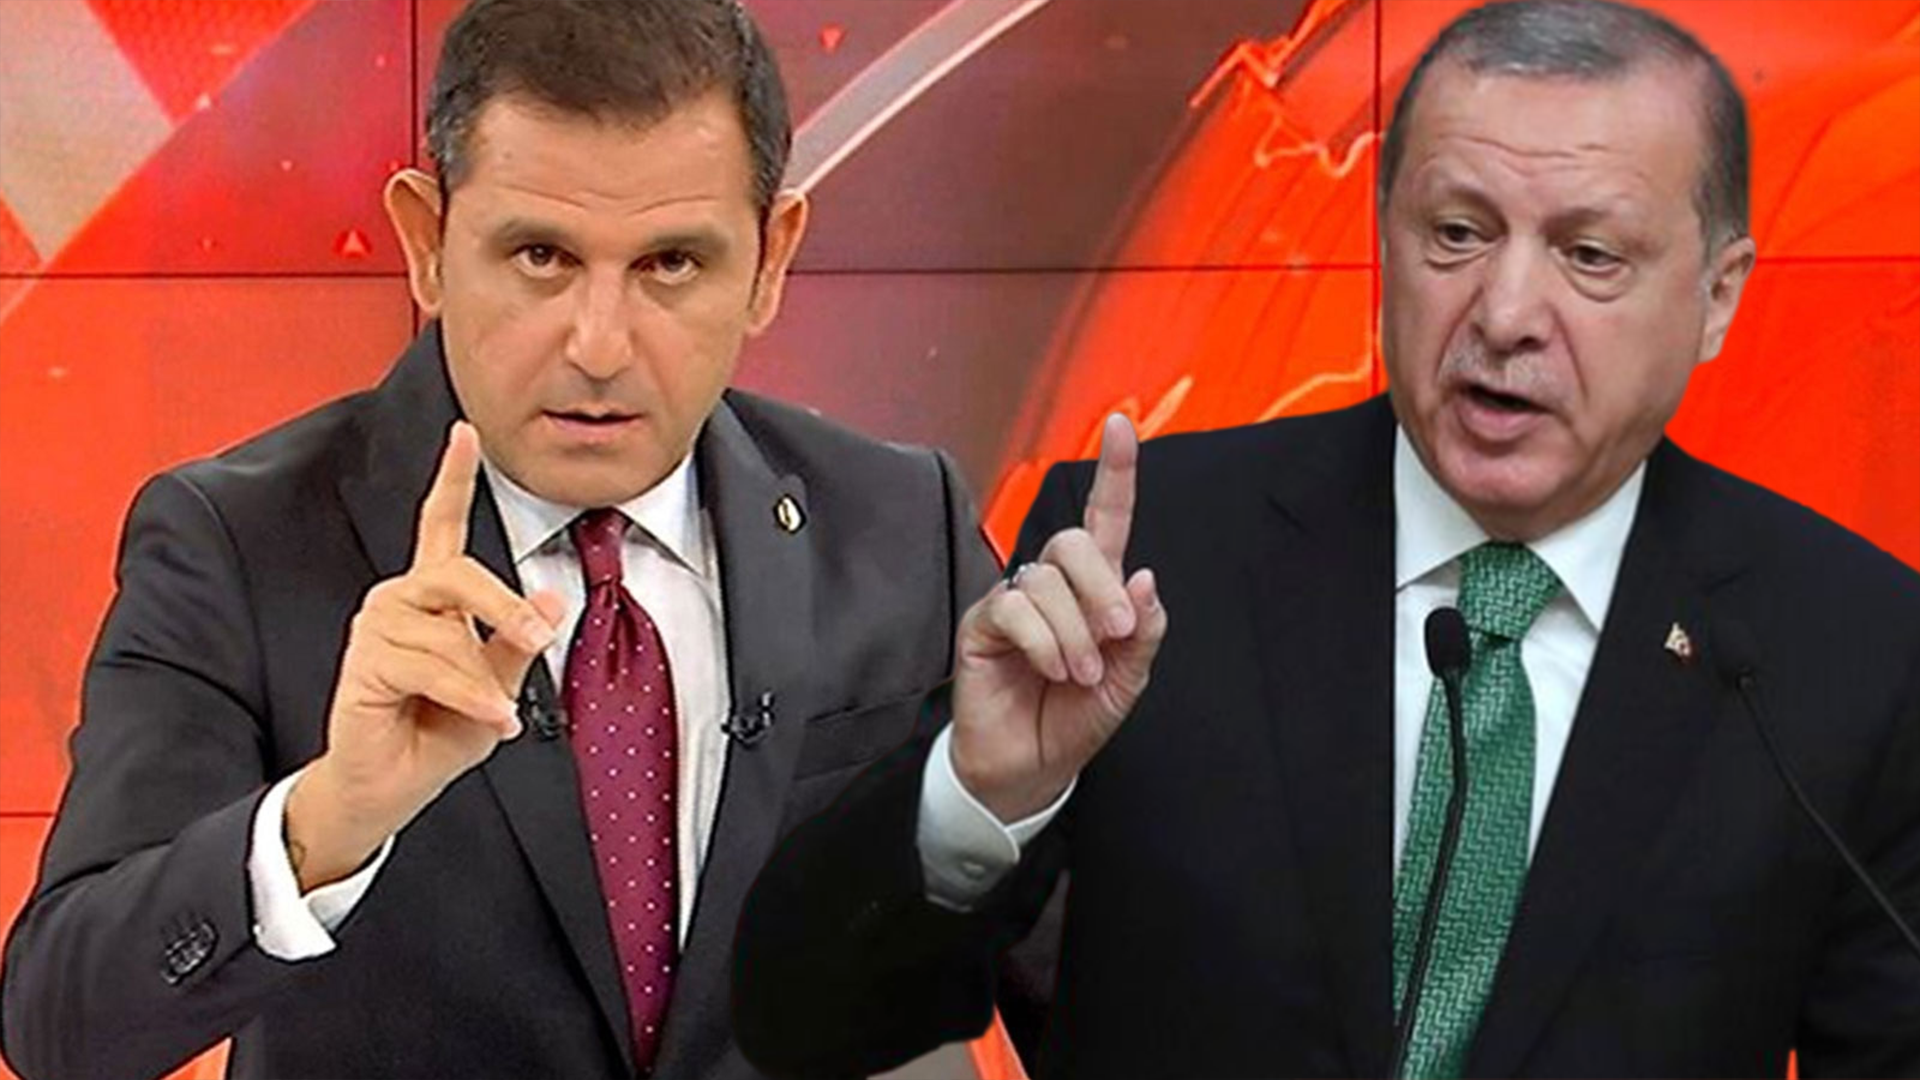 Fatih Portakal'dan "Fox önce gazete olsun, yalan haber üretmeyi bıraksın" diyen Erdoğan'a yanıt!